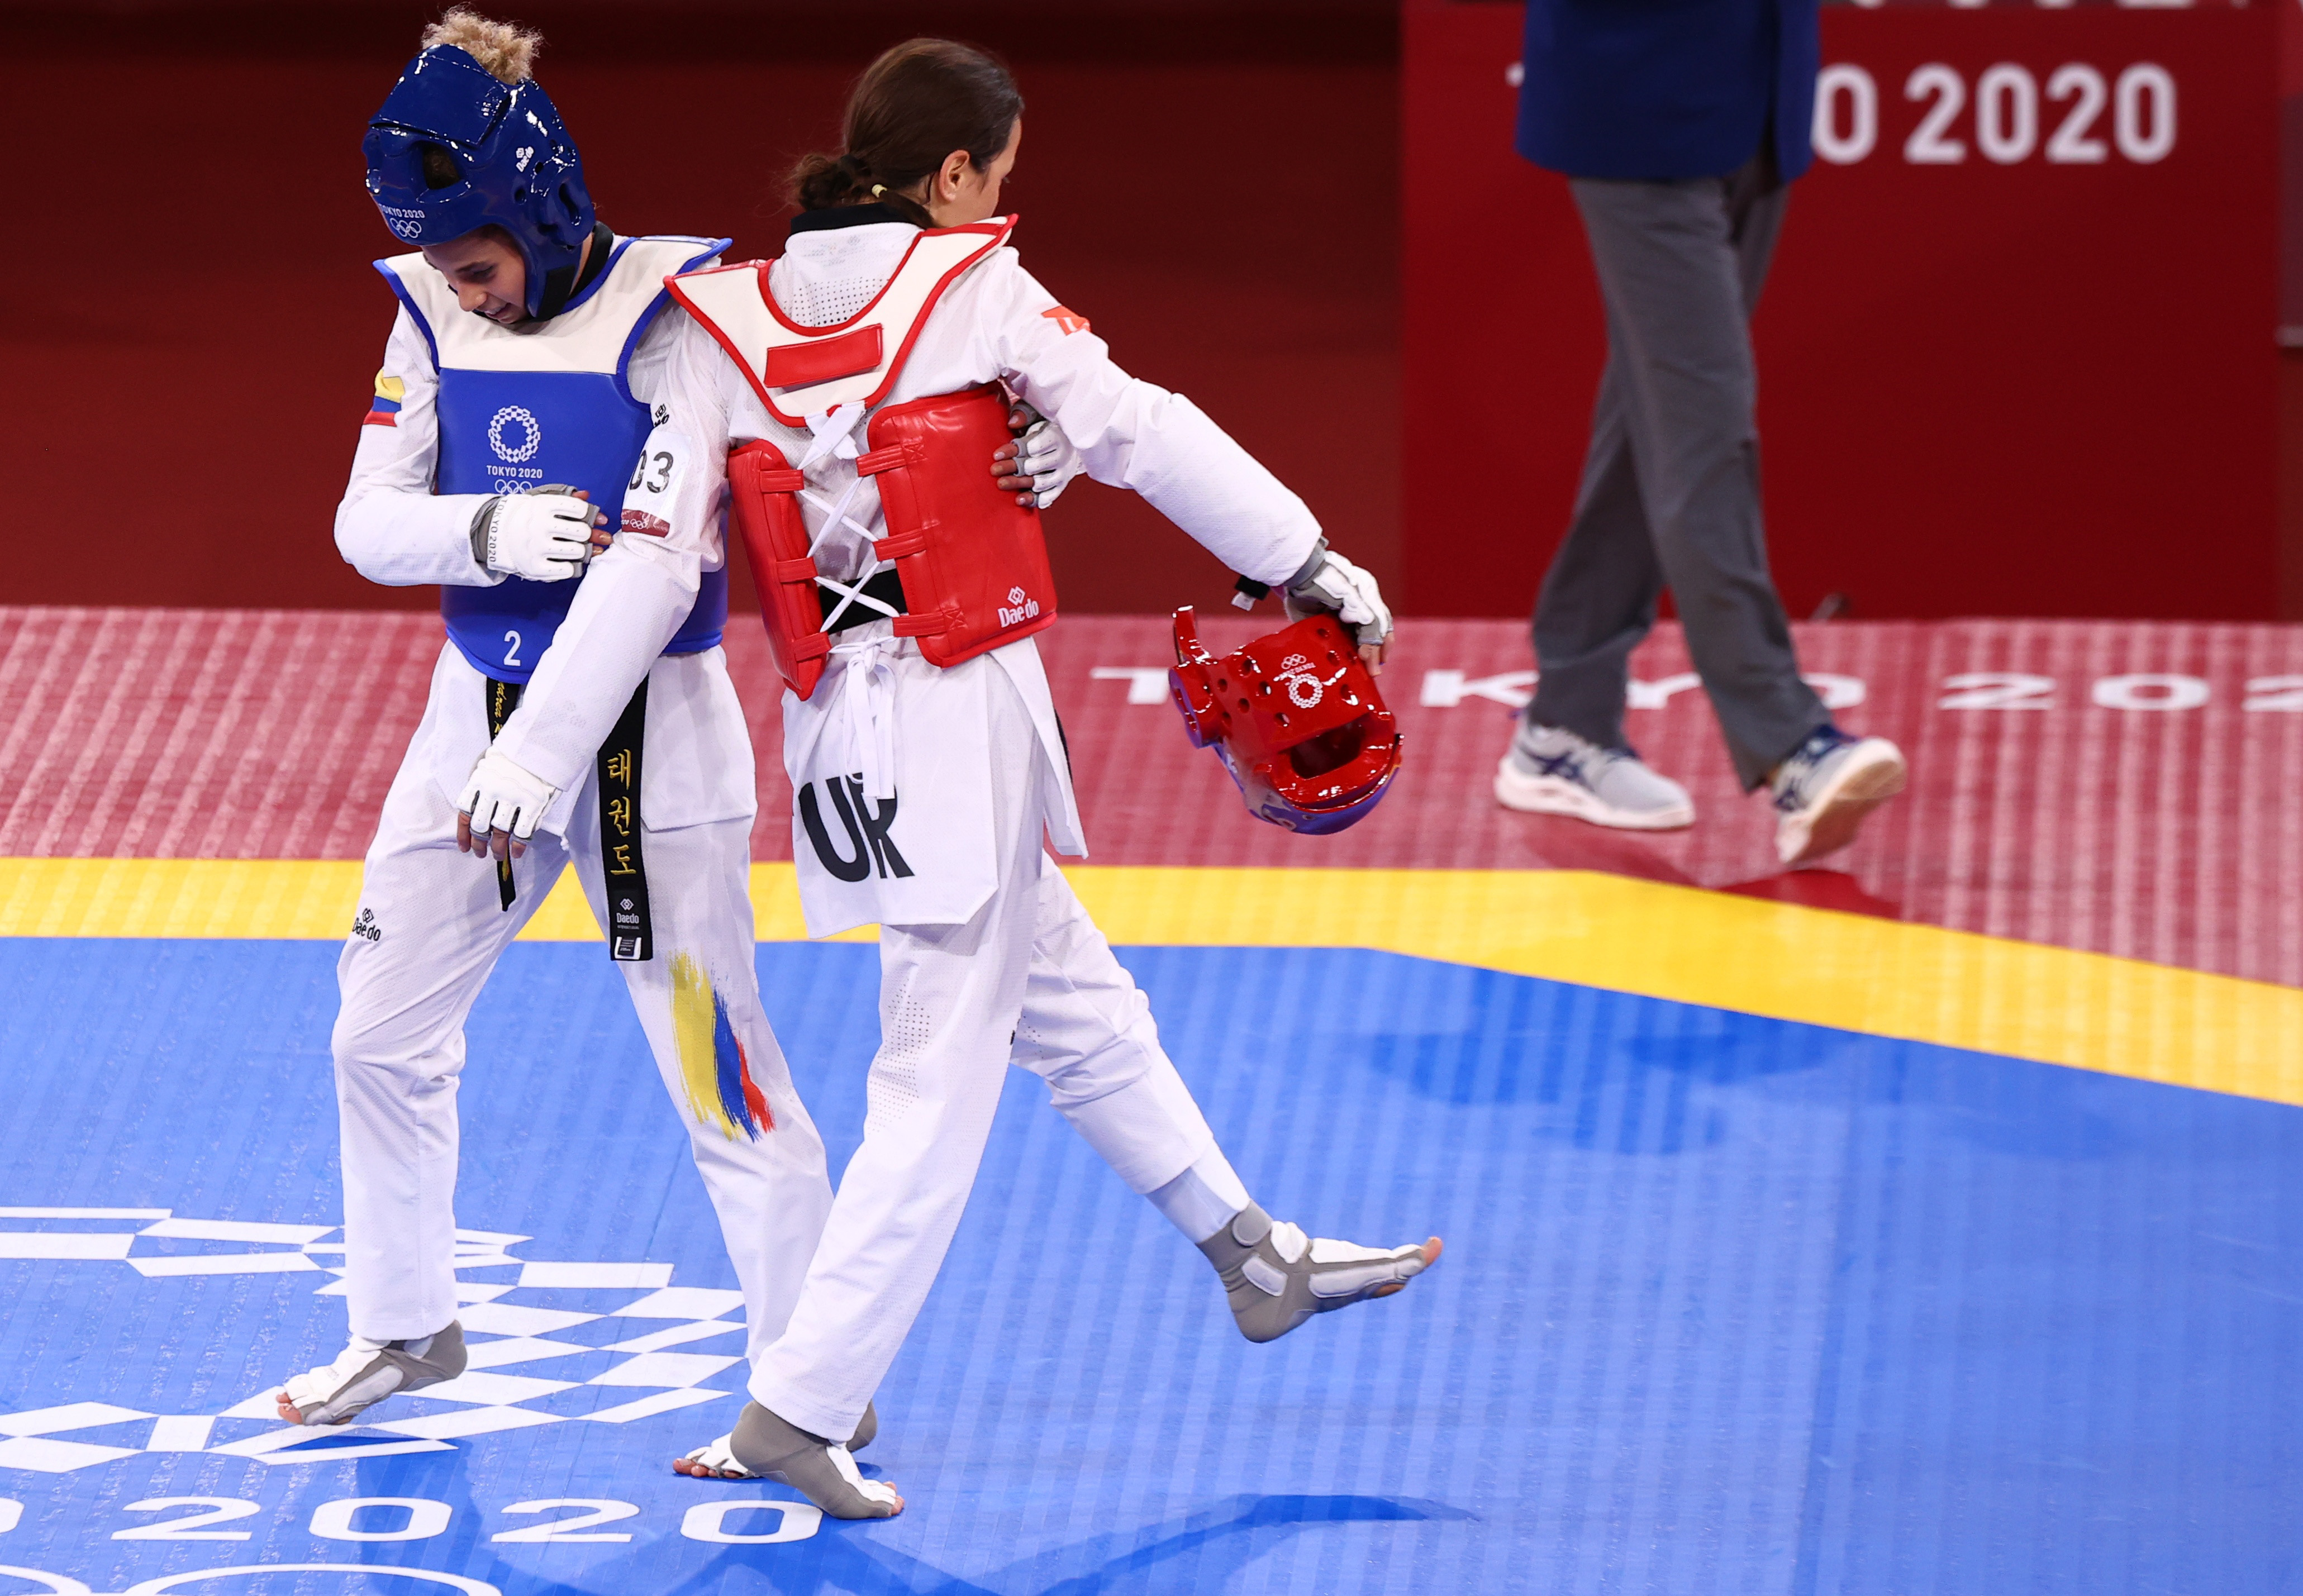 Concluyó la participación de Colombia en la disciplina de Taekwondo en los Olímpicos de Tokio 